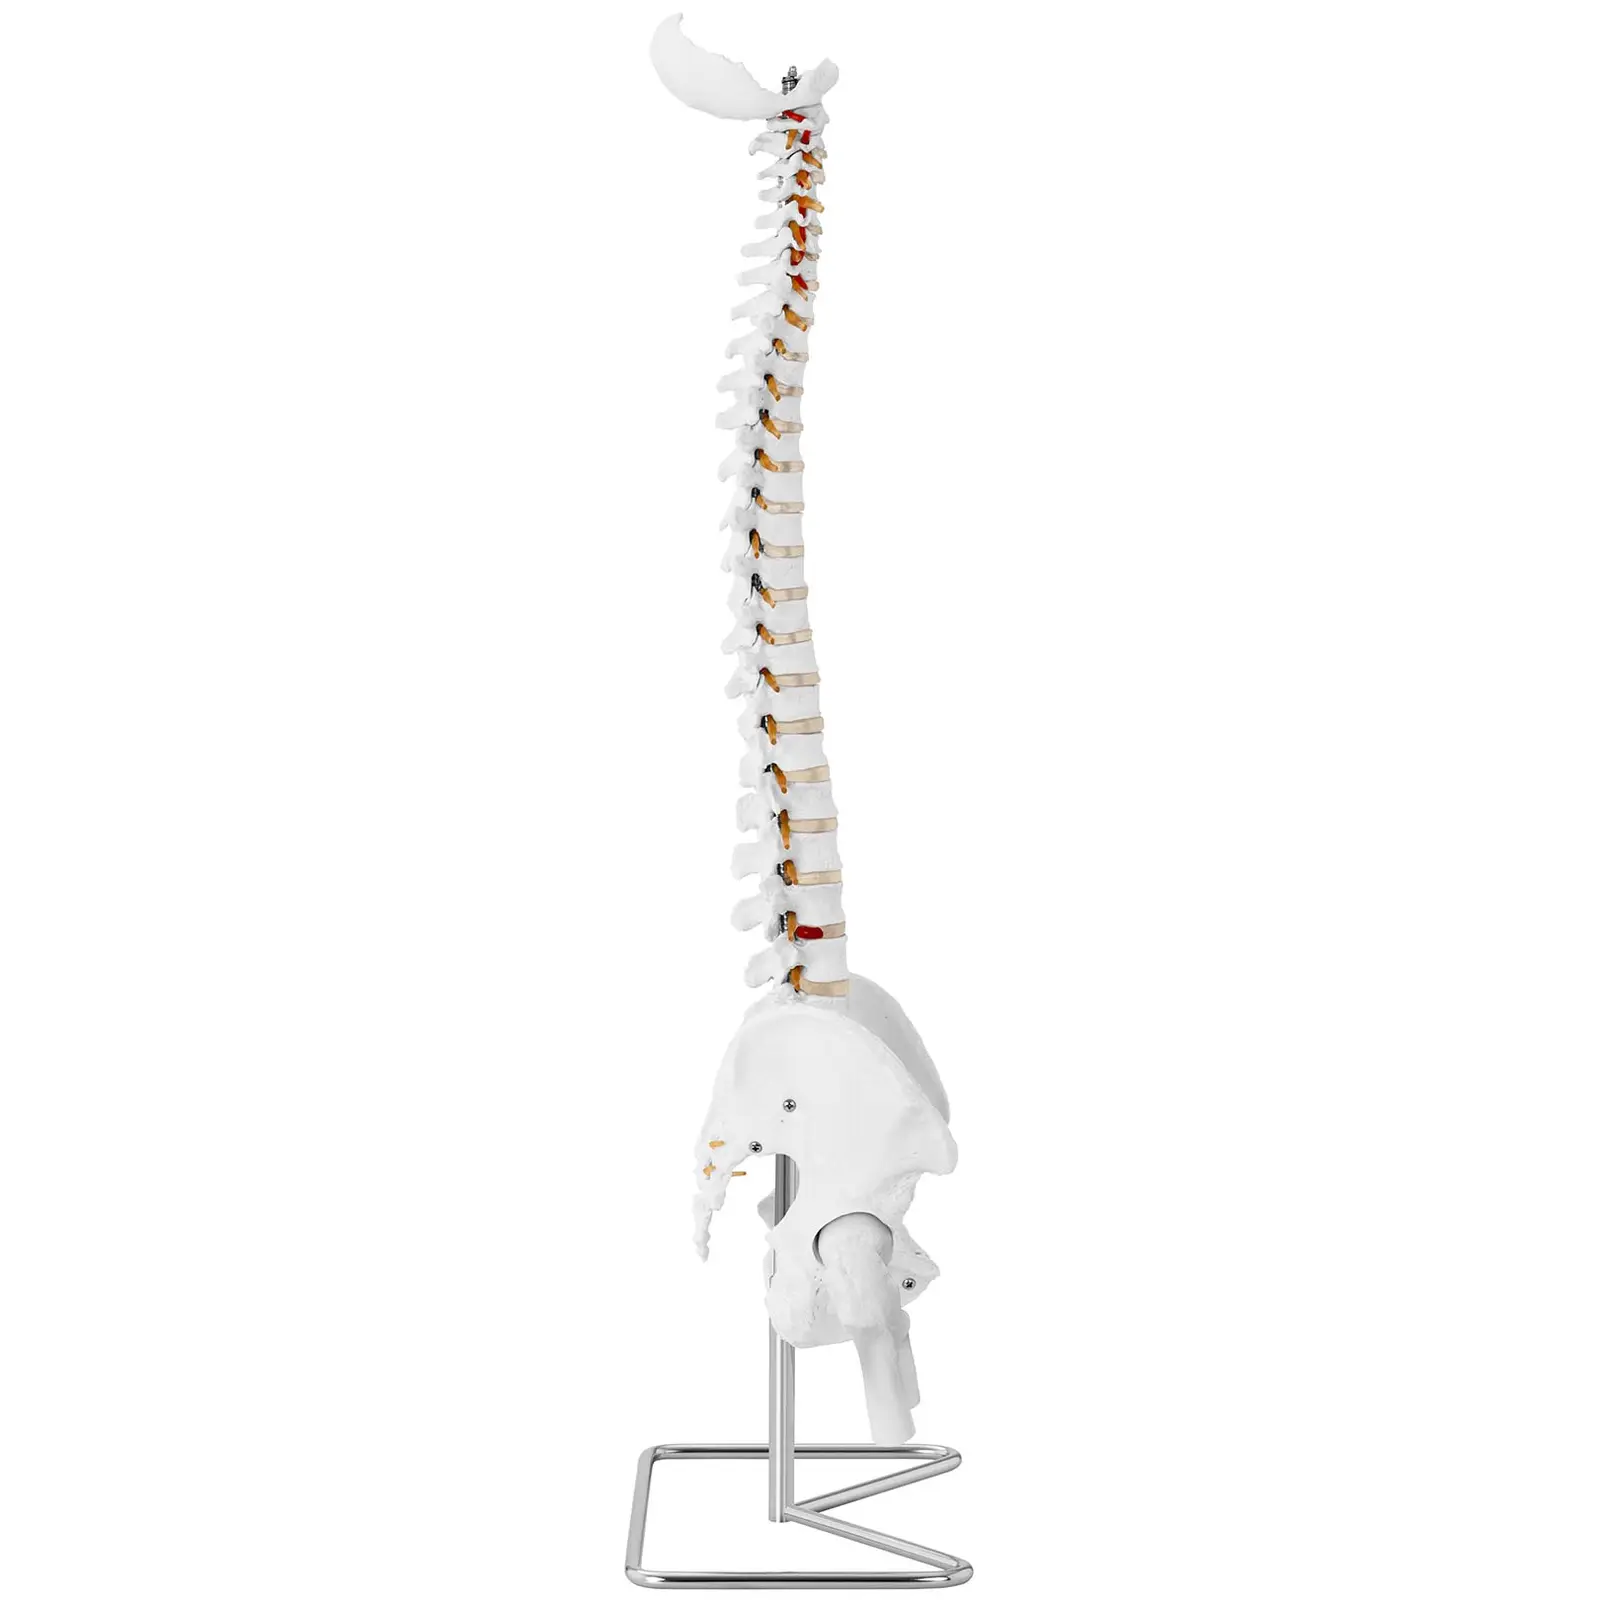 Maquette anatomique pelvis humain avec colonne vertébrale